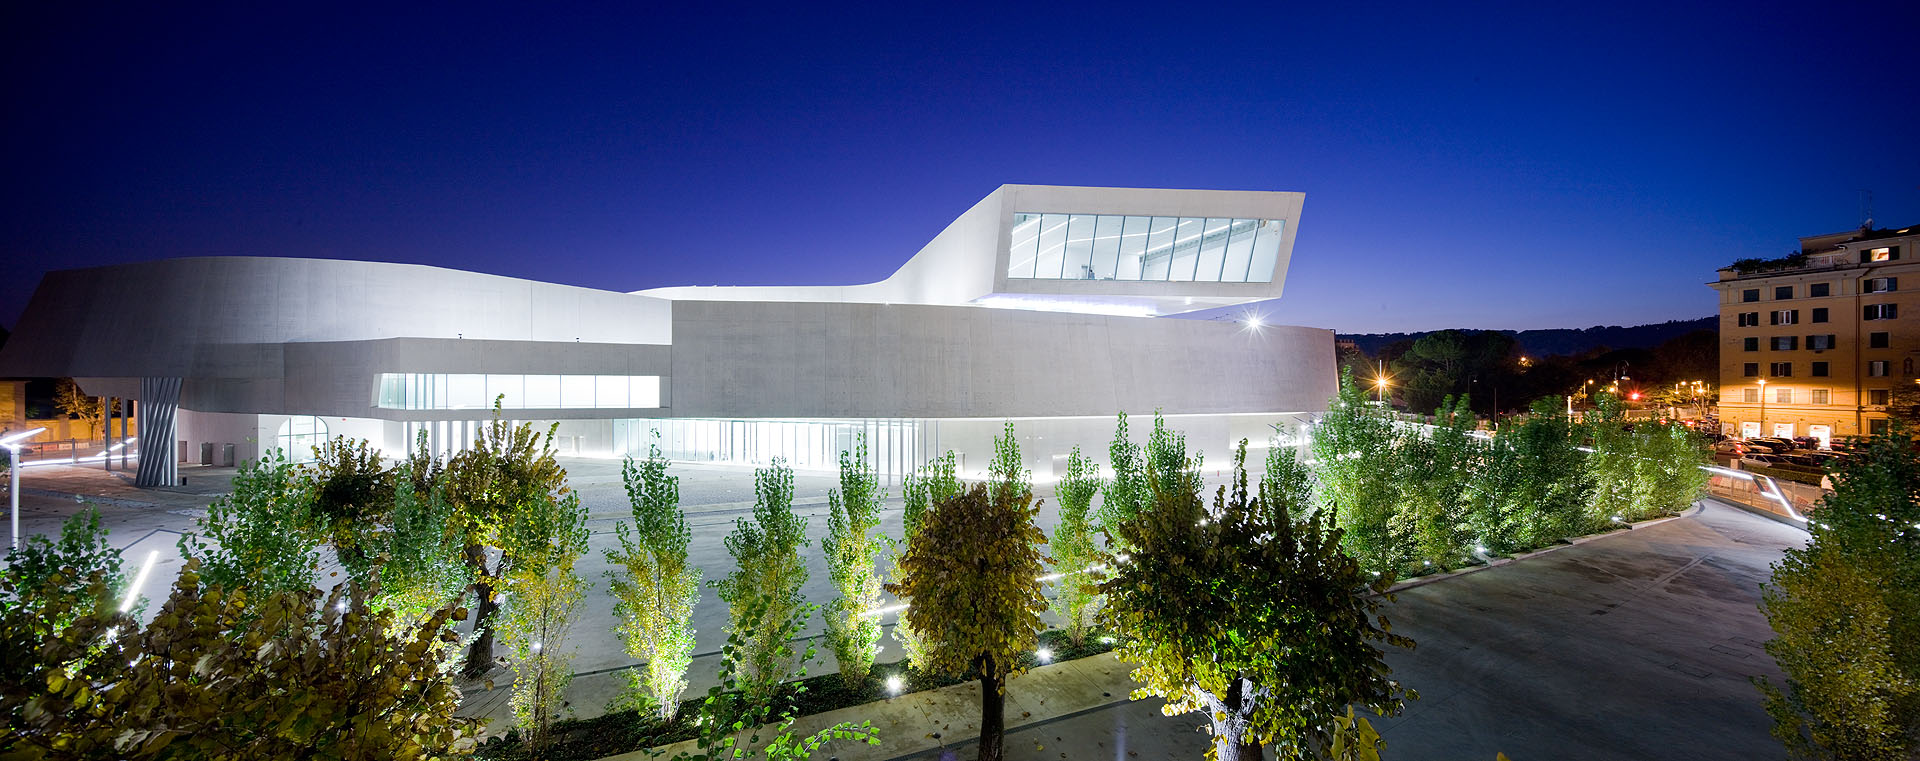 Exterior of Zaha Hadid's MAXXI - National Museum of XXI Century Arts